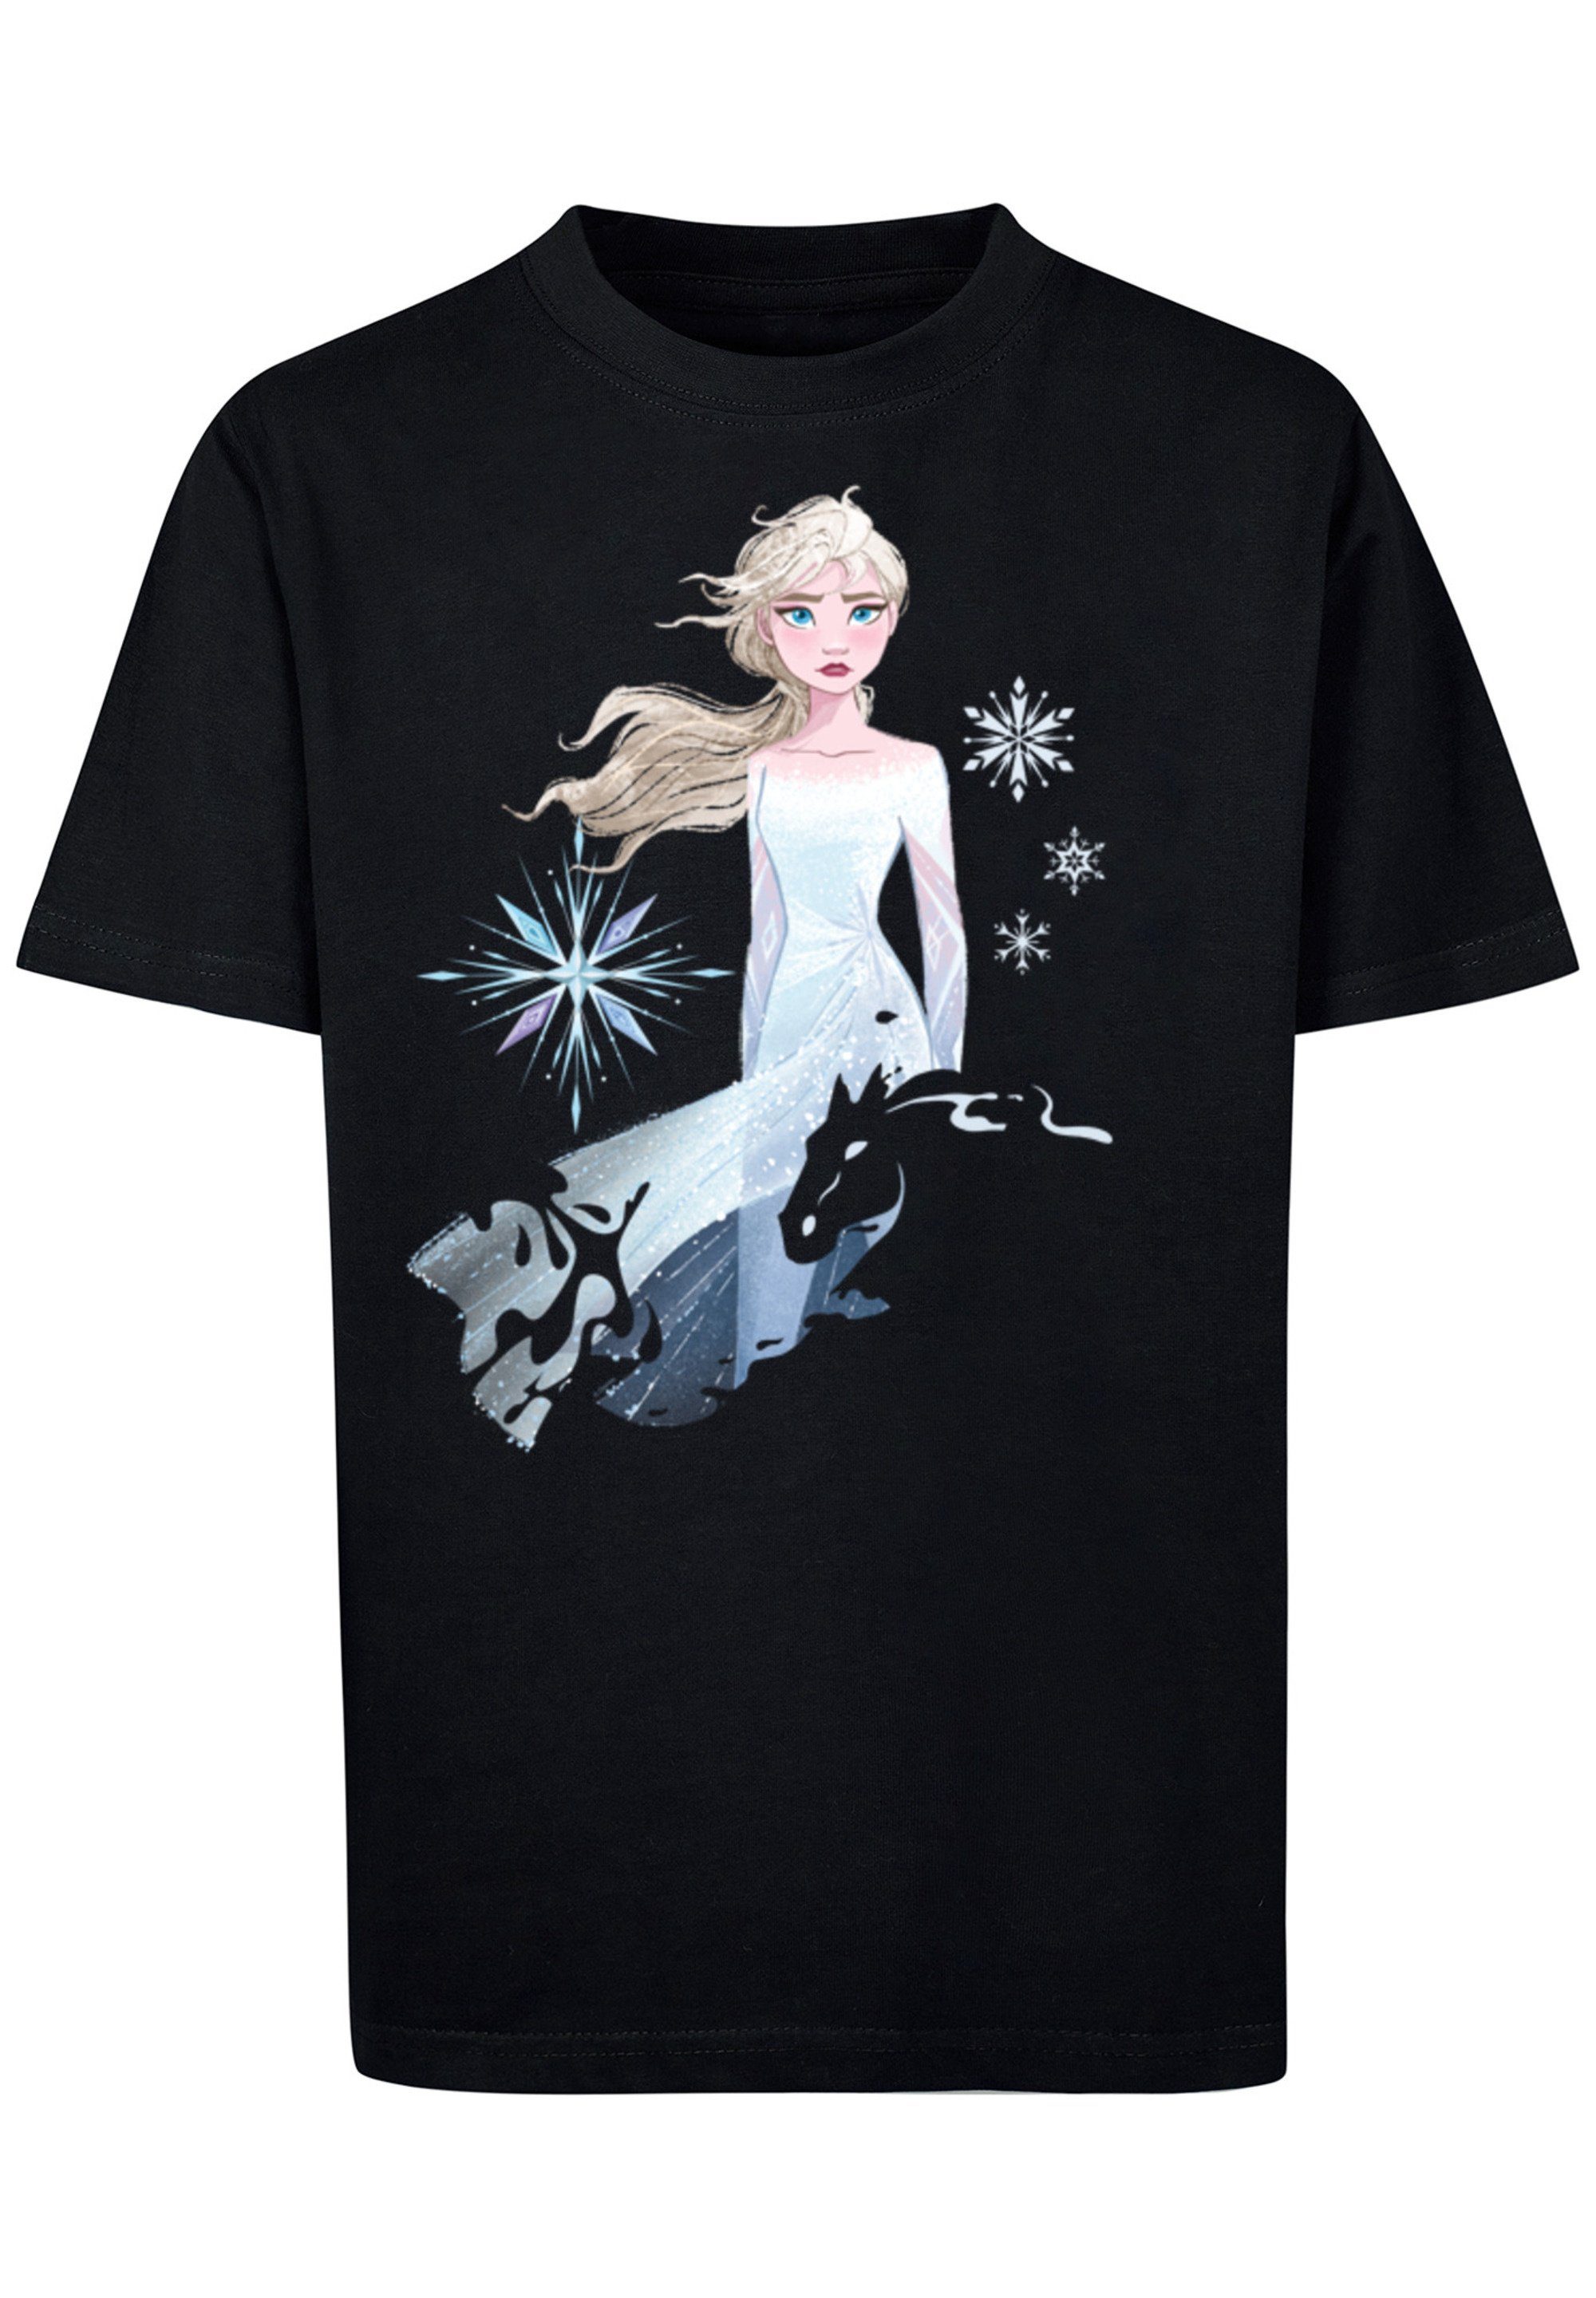 Wassergeist Merch,Jungen,Mädchen,Bedruckt Nokk F4NT4STIC Frozen Disney Unisex Elsa schwarz 2 T-Shirt Kinder,Premium Pferd Silhouette